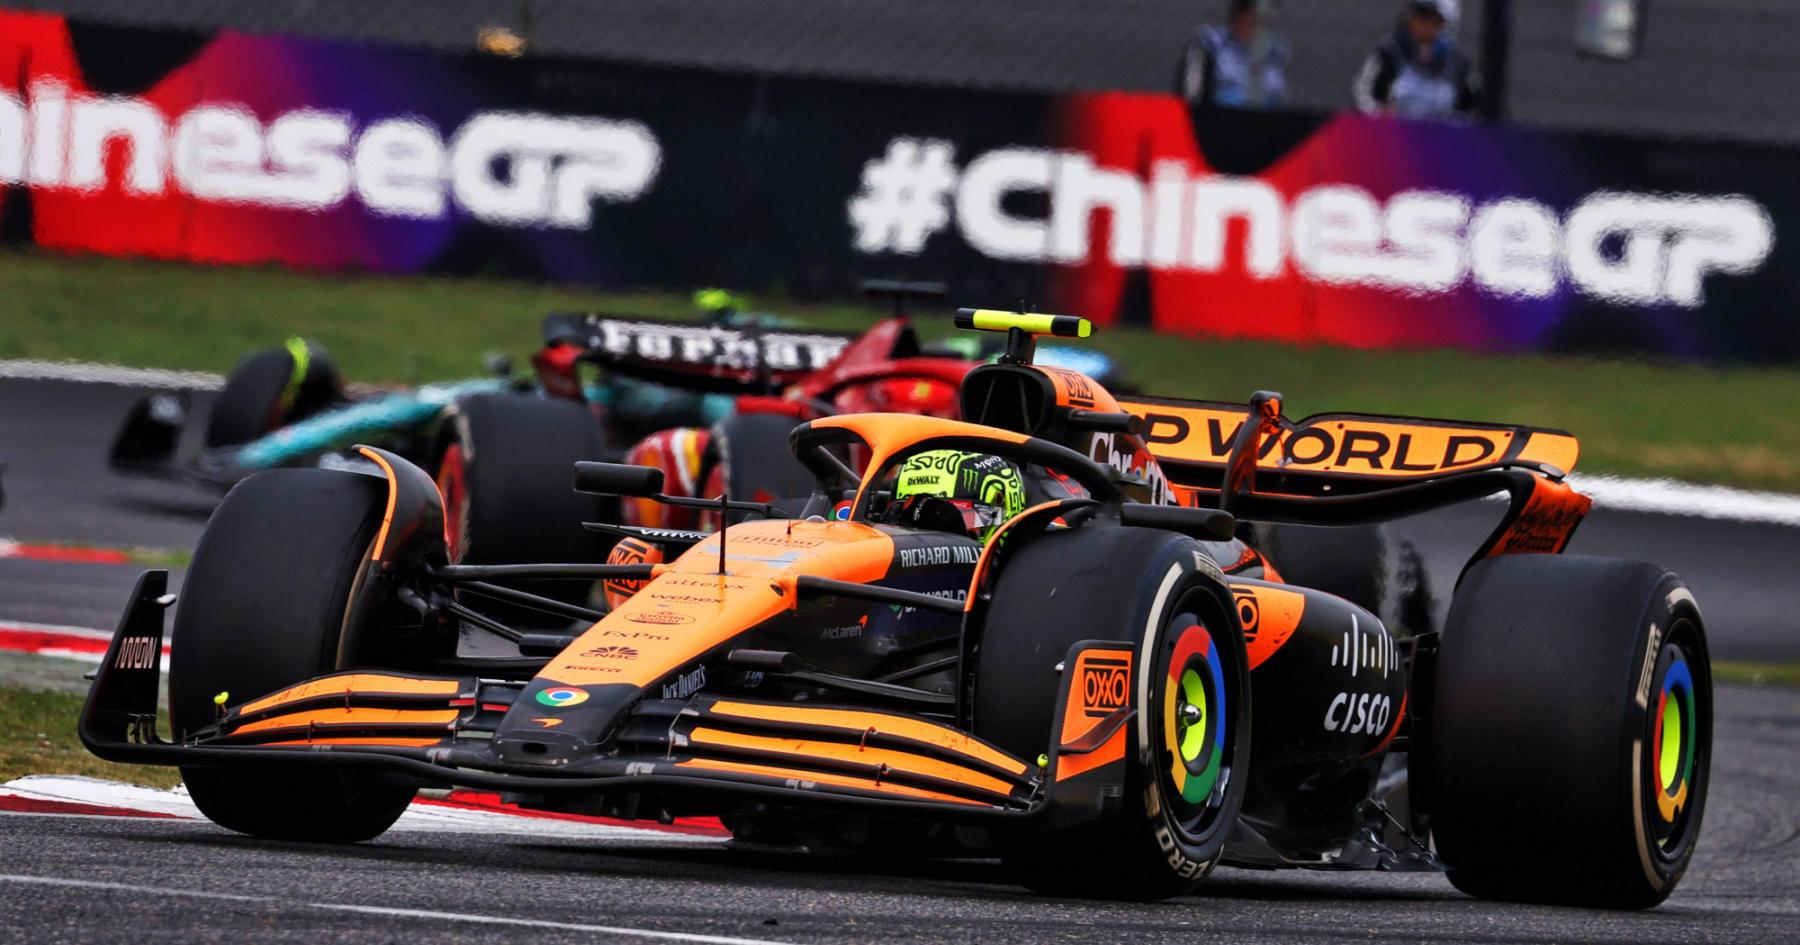 Revving Up Success: McLaren Secures Major Global Partnership Deal